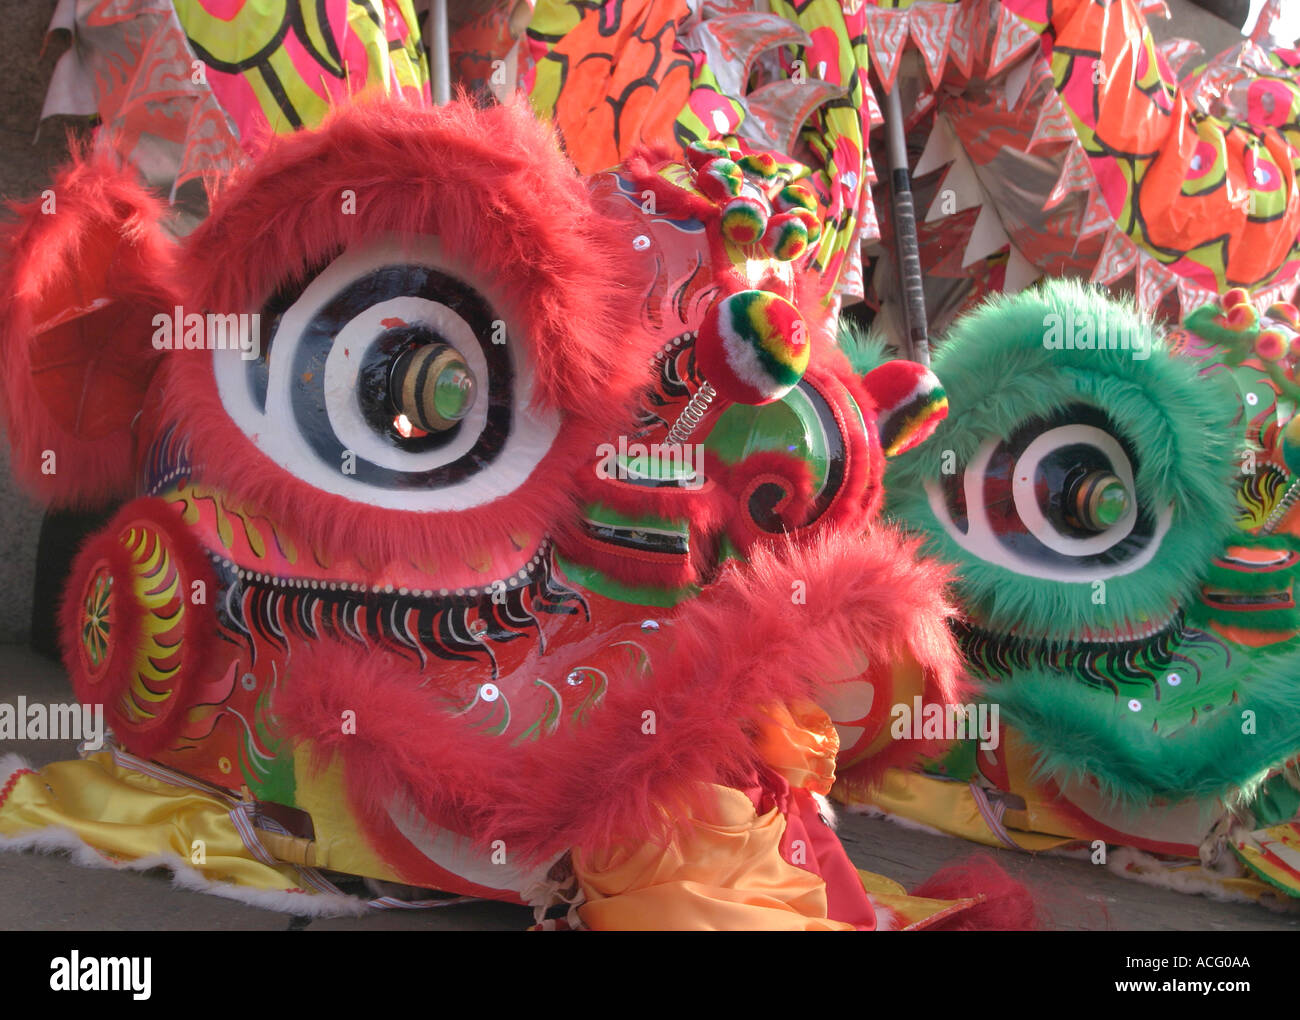 Les masques de Dragon pour les célébrations du Nouvel An chinois. Trafalgar Square, Londres, Angleterre Banque D'Images